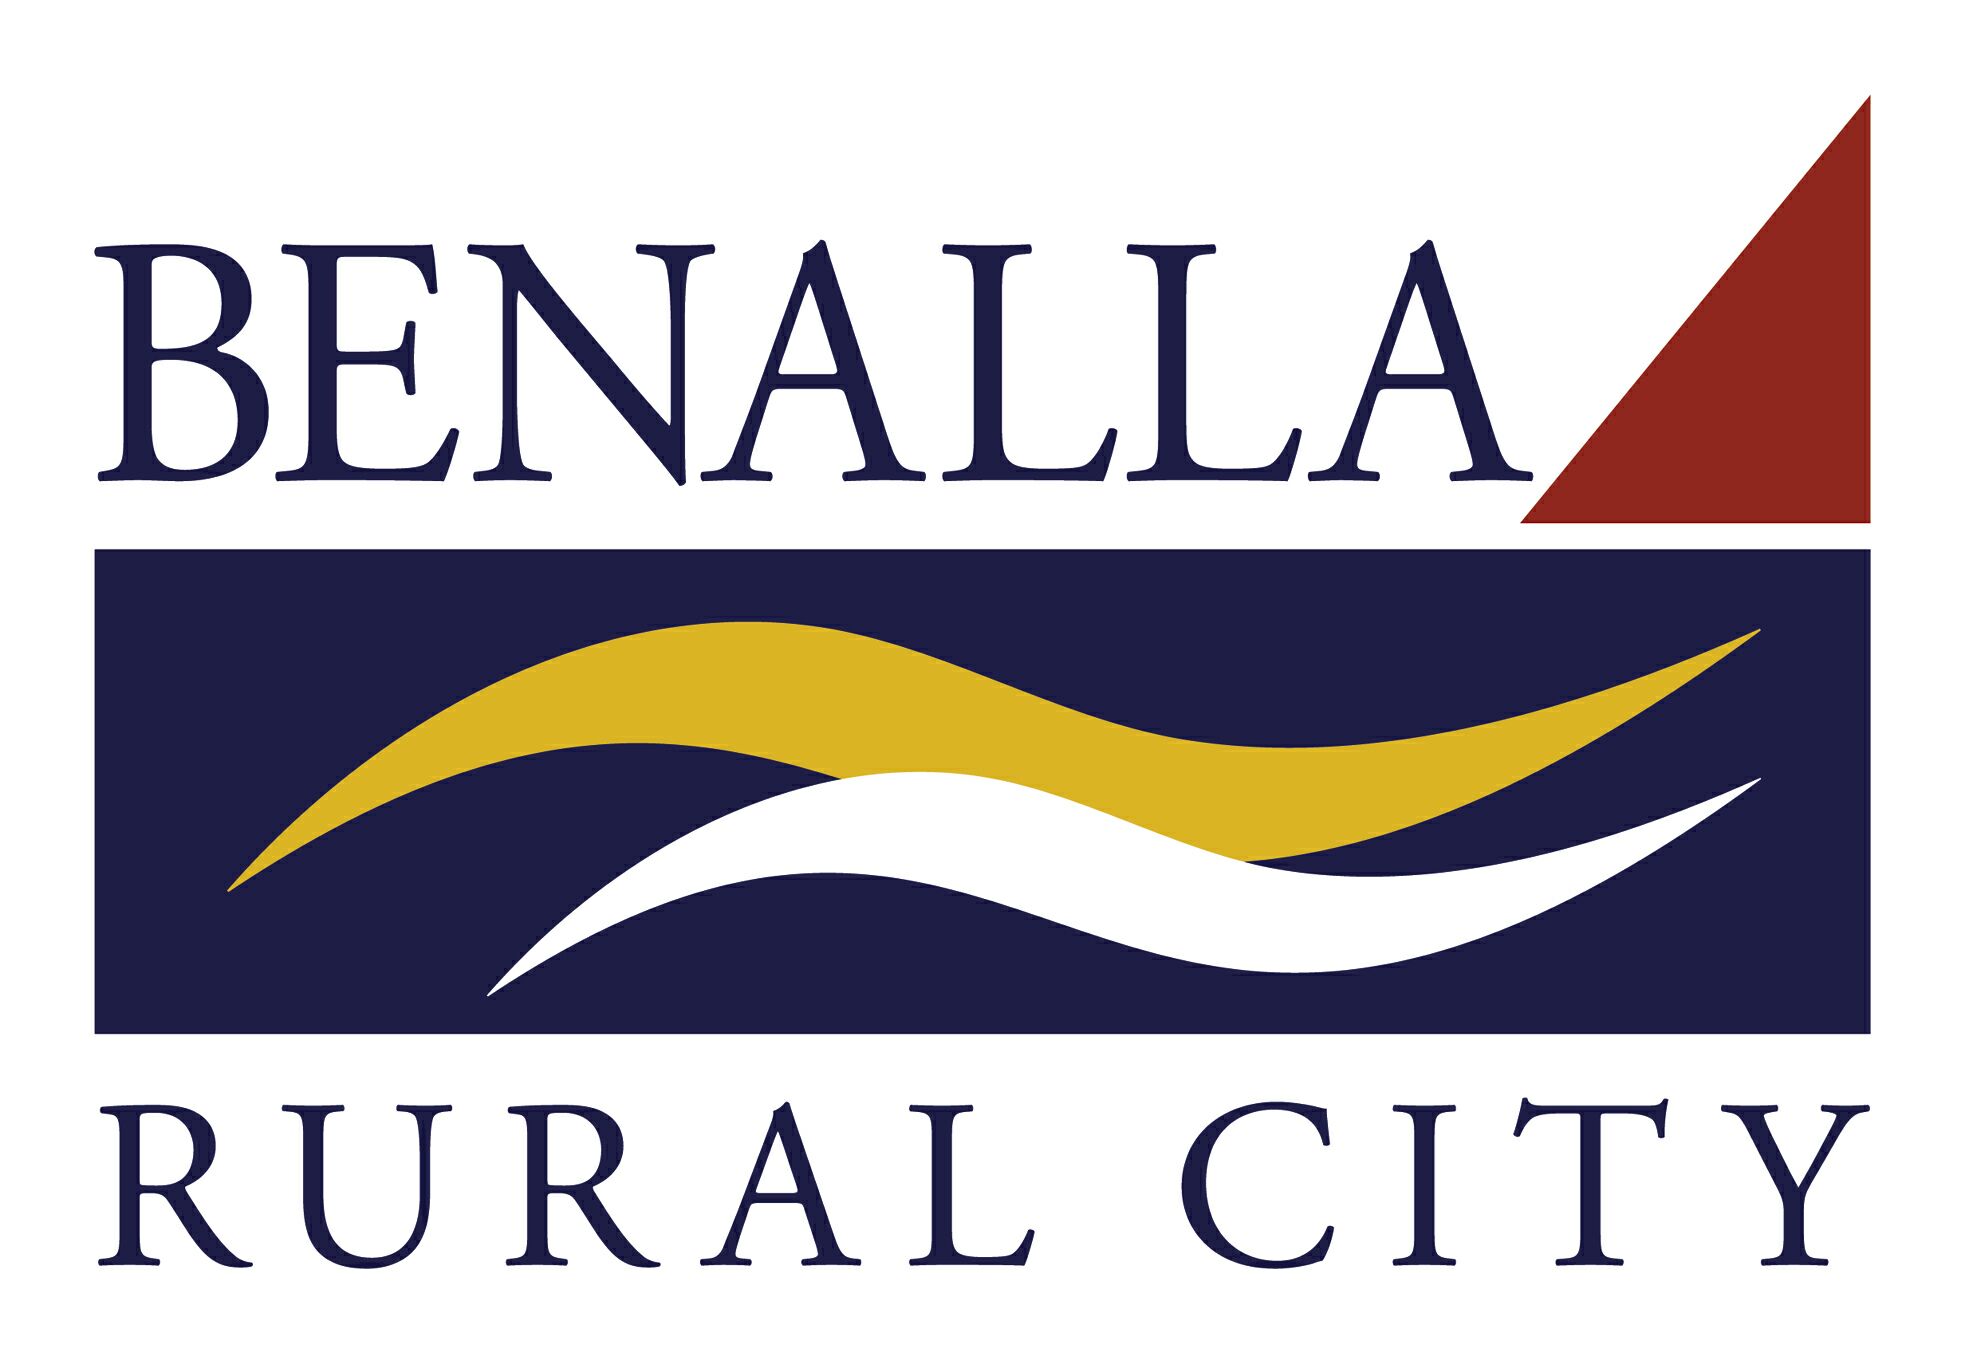 Benalla Rural City Council